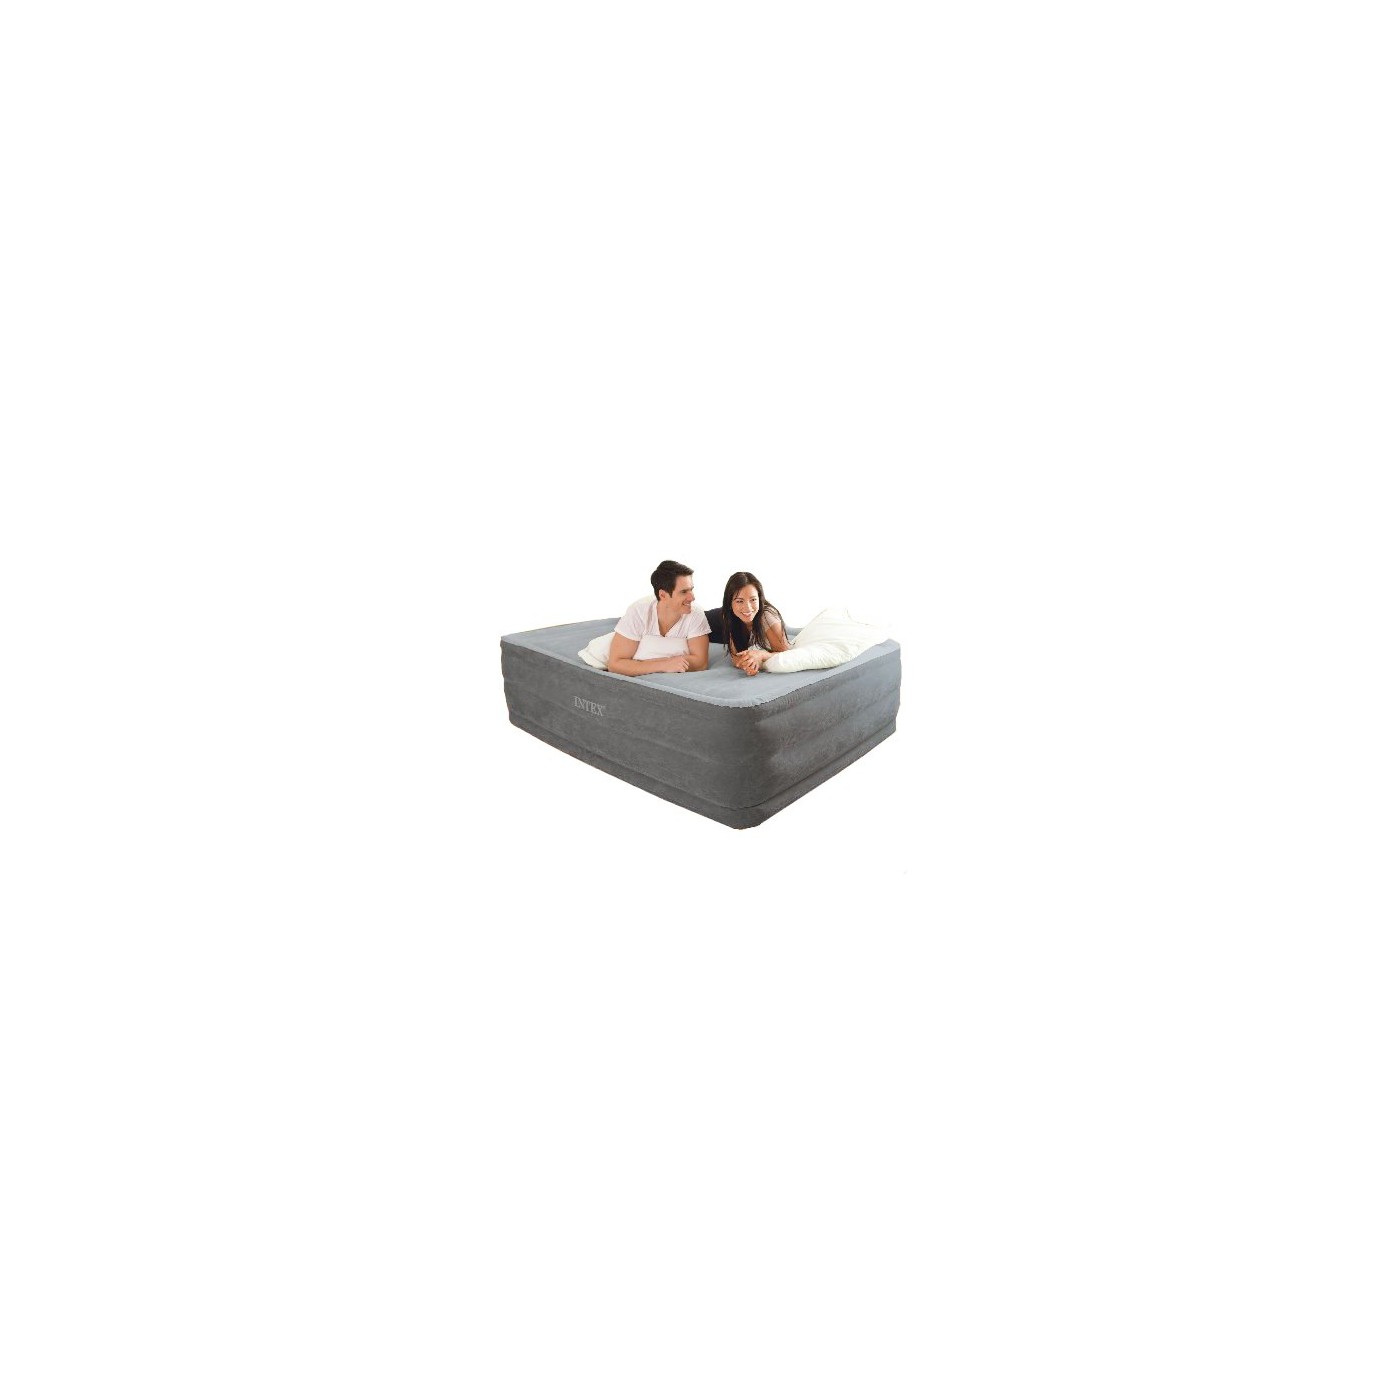 DURA-BEAM QUEEN 203 X 152 X 46 cm INTEX mattress